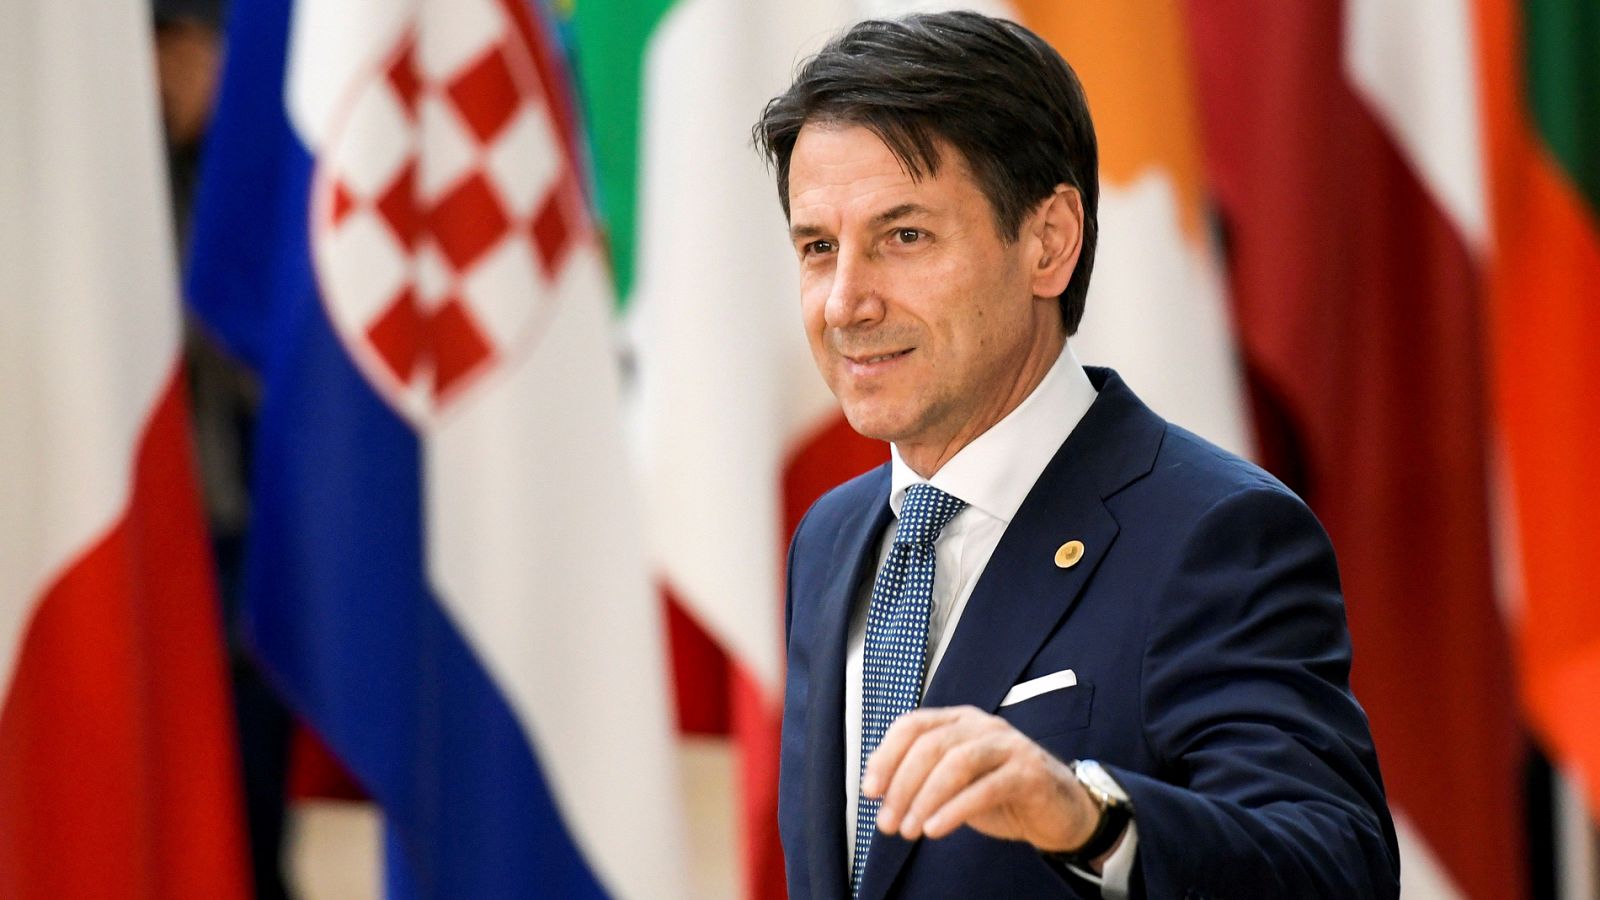 Cumpliendo con su amenaza, el Gobierno italiano ha bloqueado las conclusiones de los temas acordados en la primera sesión de trabajo de Los Veintiocho durante la cumbre europea, protagonizada por la migración pero que también debate cuestiones sobre 